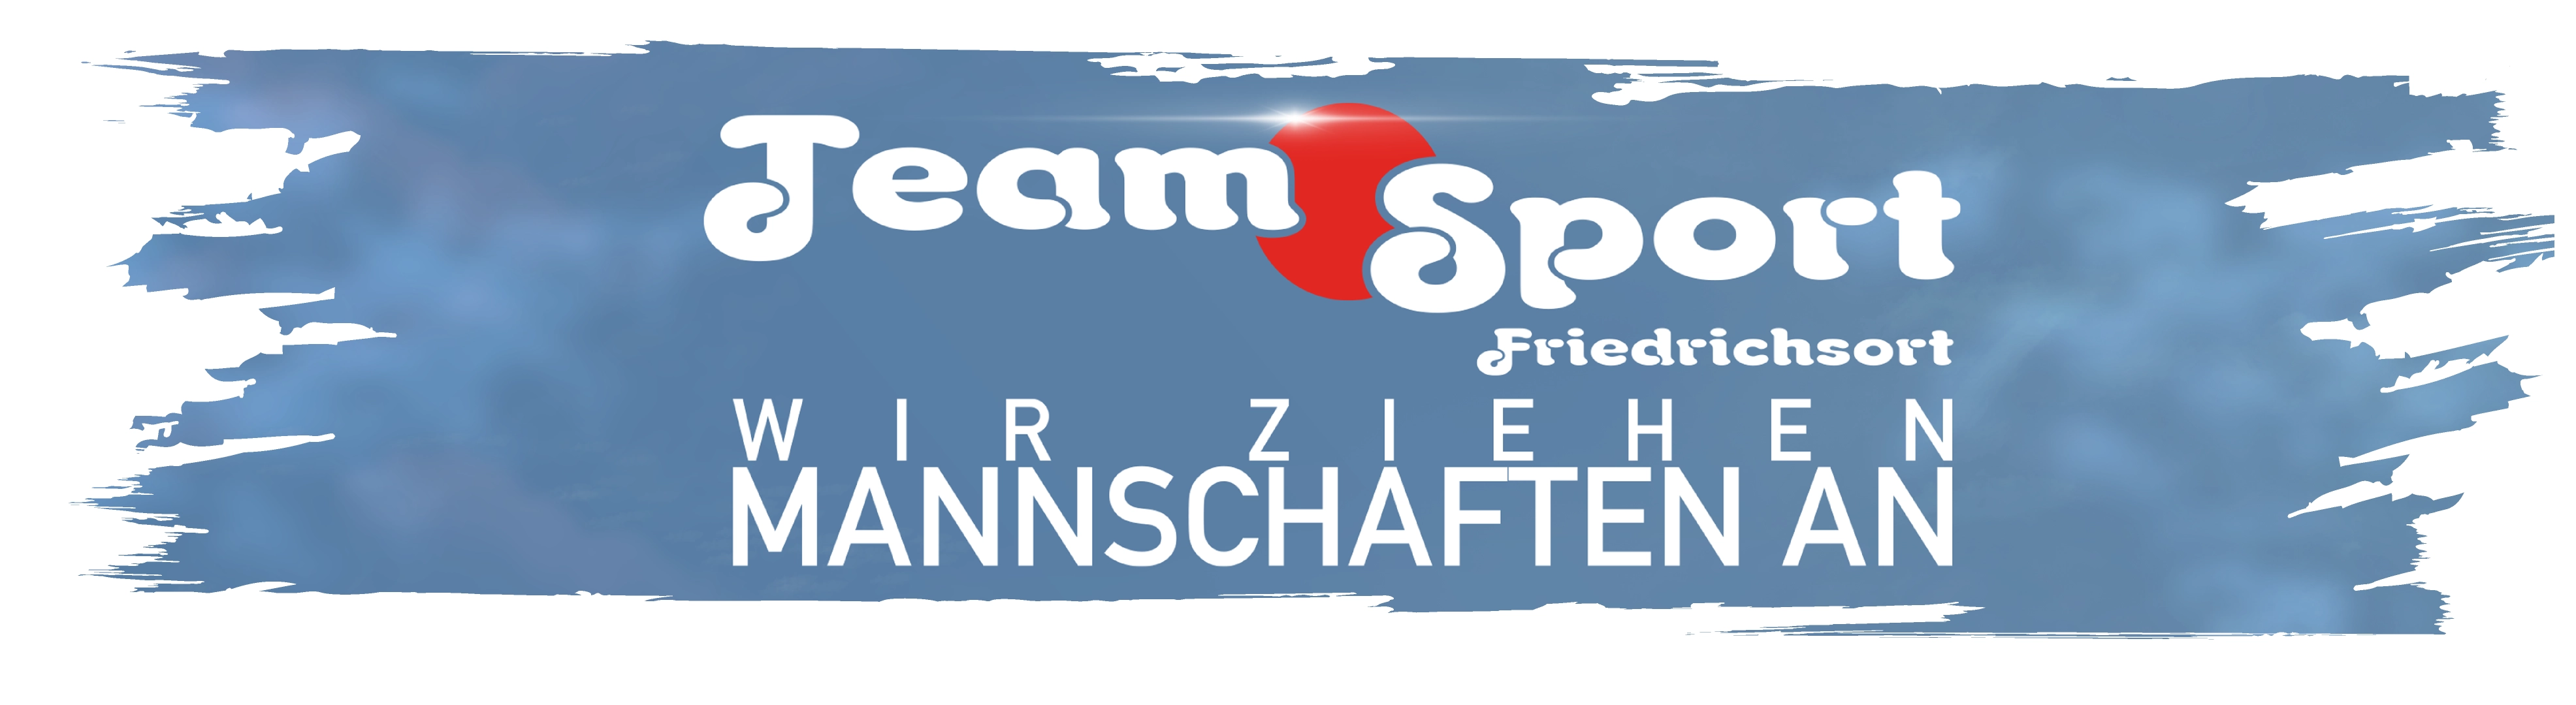 (c) Teamsport-friedrichsort-shop.de